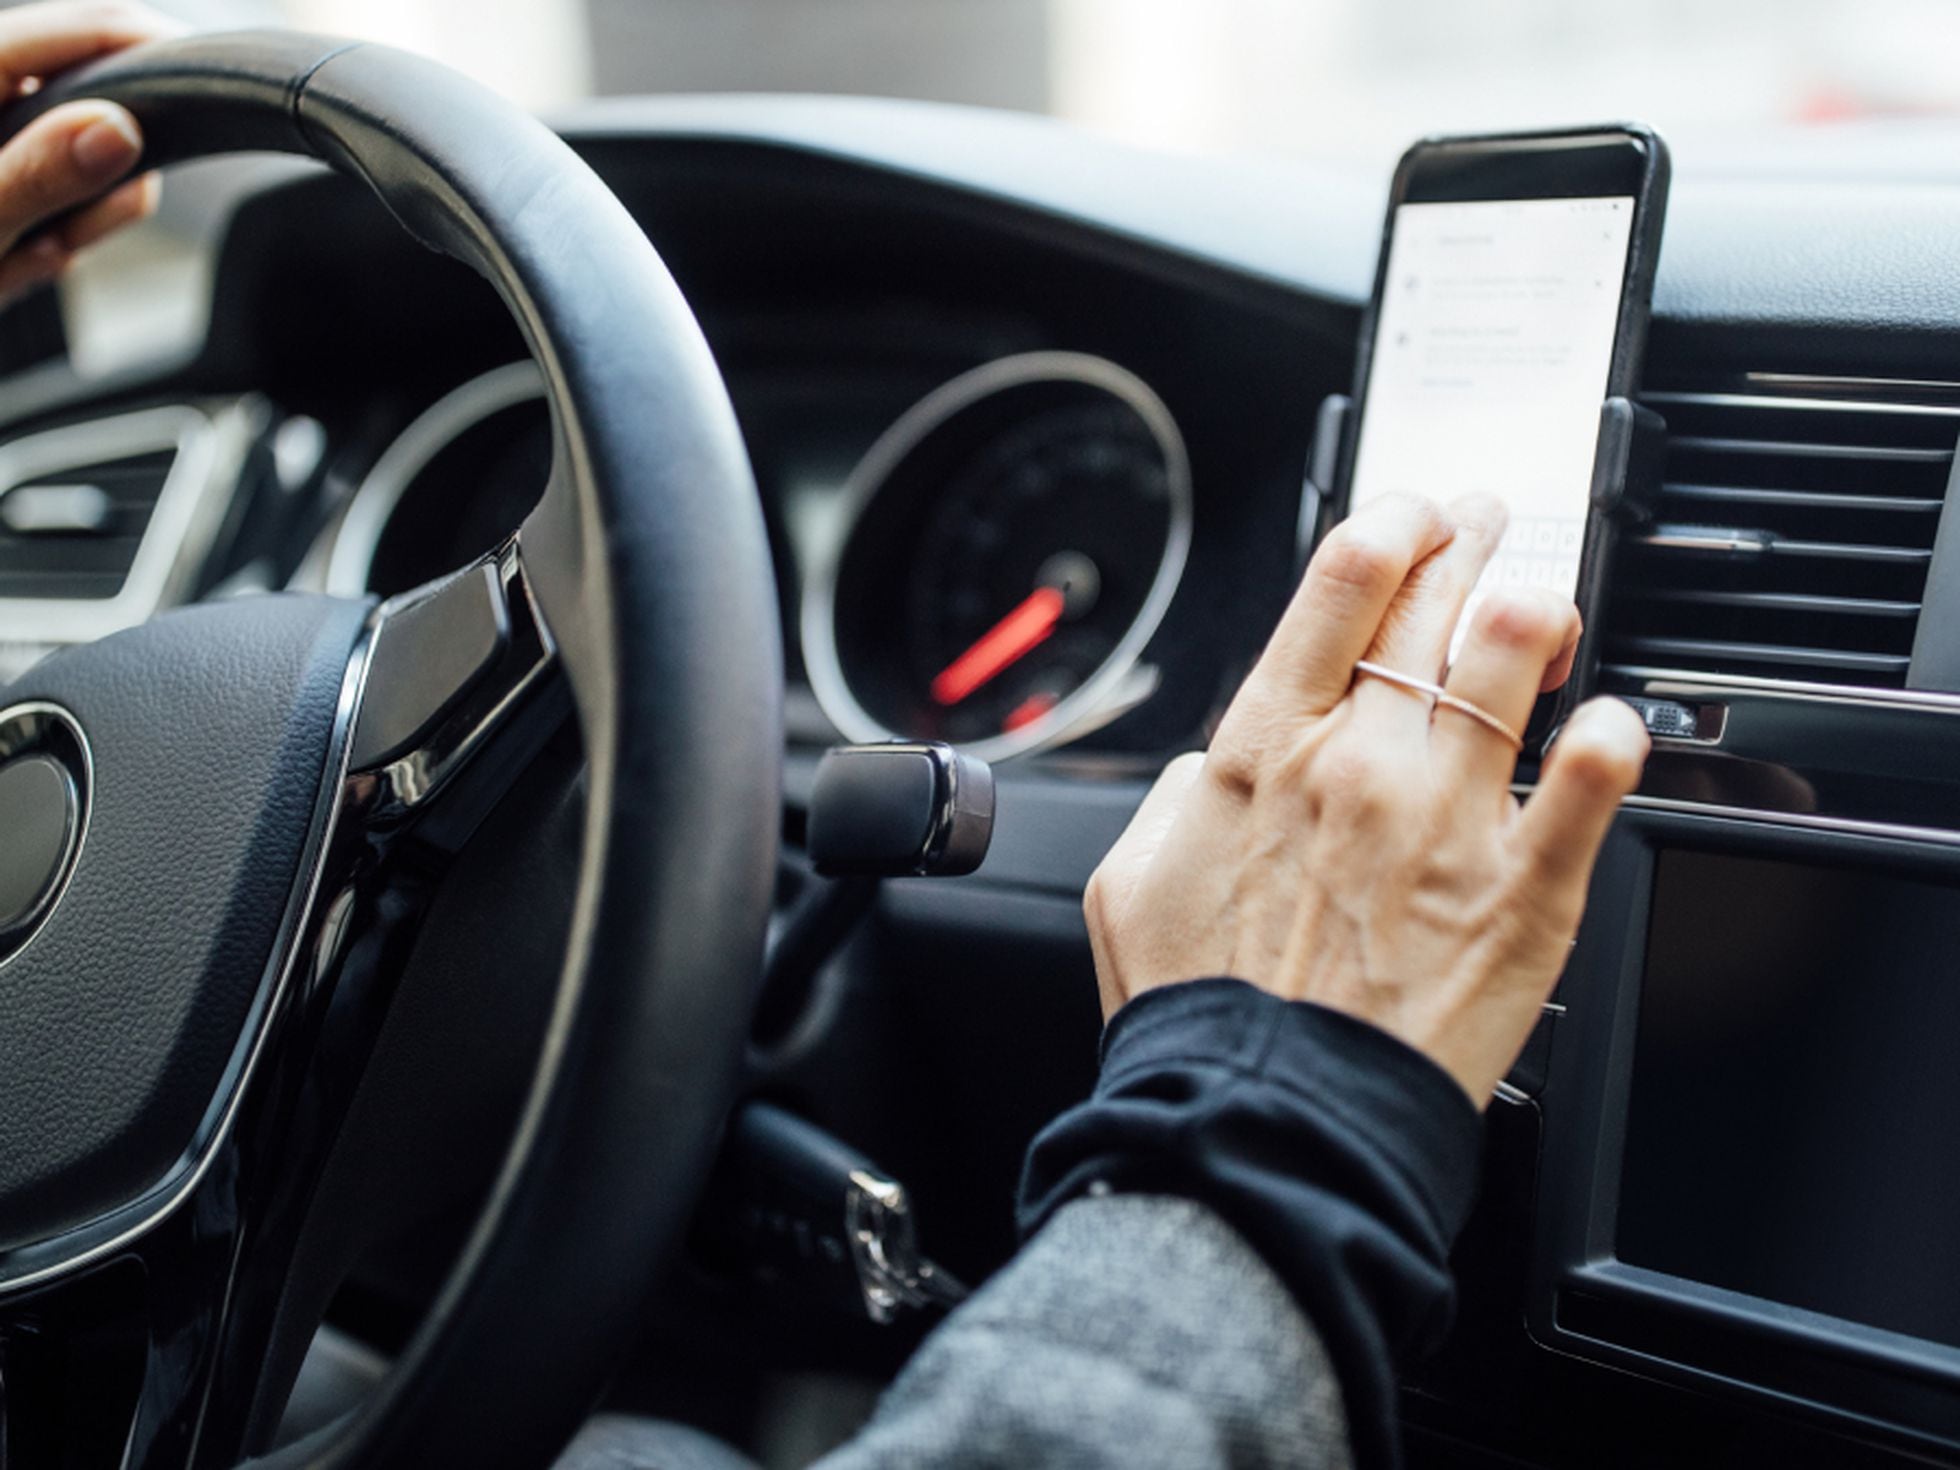 Los mejores soportes para llevar el móvil en el coche y evitar